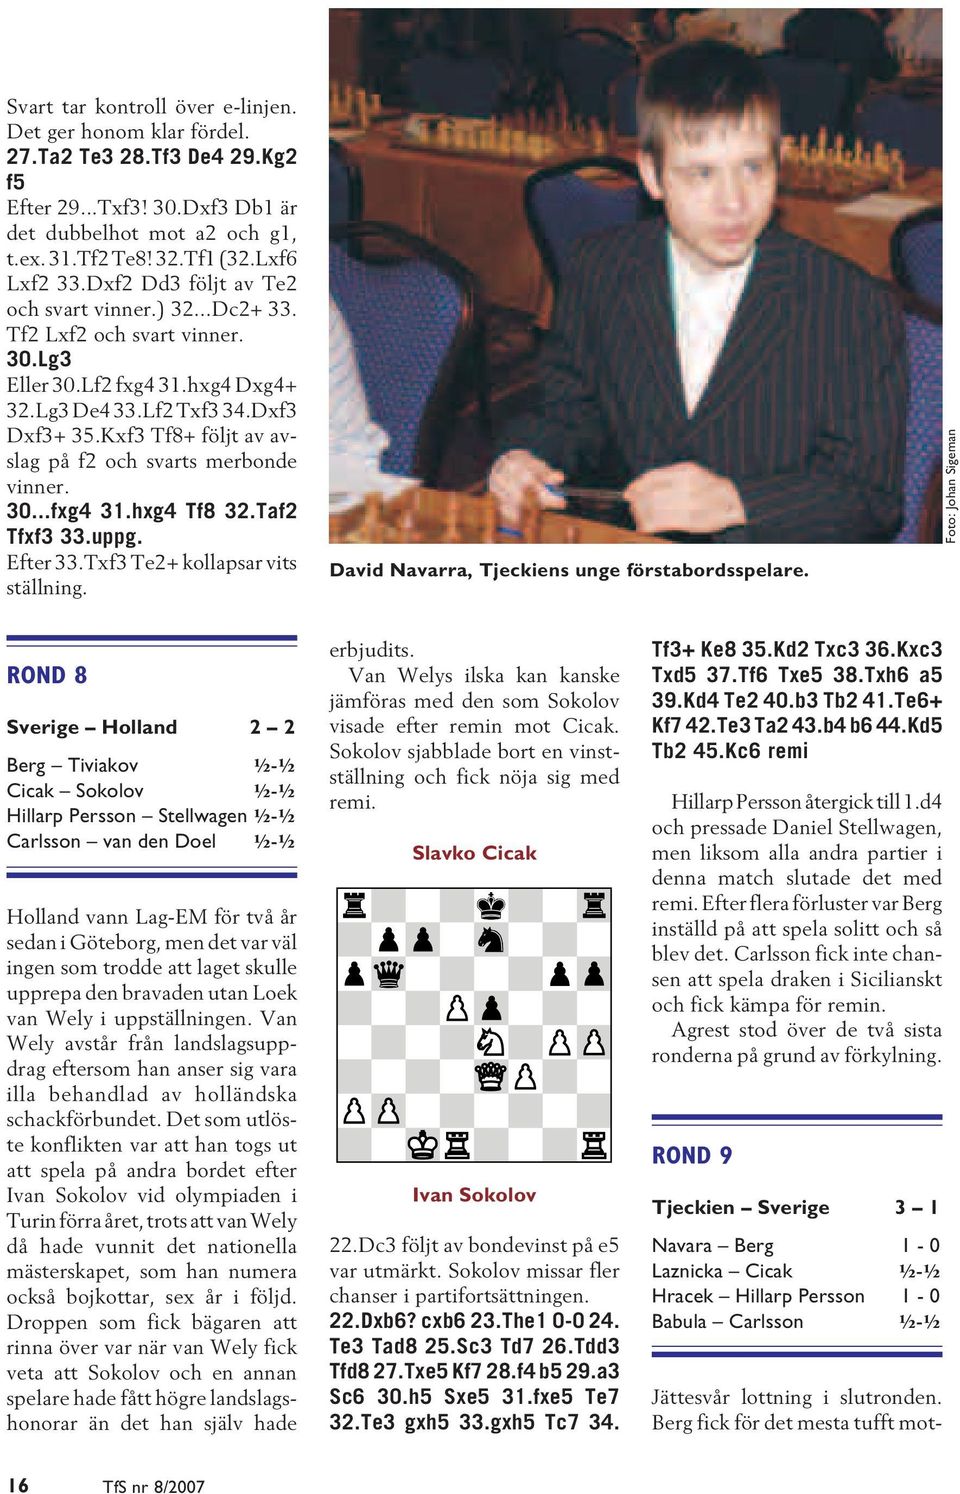 Kxf3 Tf8+ följt av avslag på f2 och svarts merbonde vinner. 30...fxg4 31.hxg4 Tf8 32.Taf2 Tfxf3 33.uppg. Efter 33.Txf3 Te2+ kollapsar vits ställning. David Navarra, Tjeckiens unge förstabordsspelare.